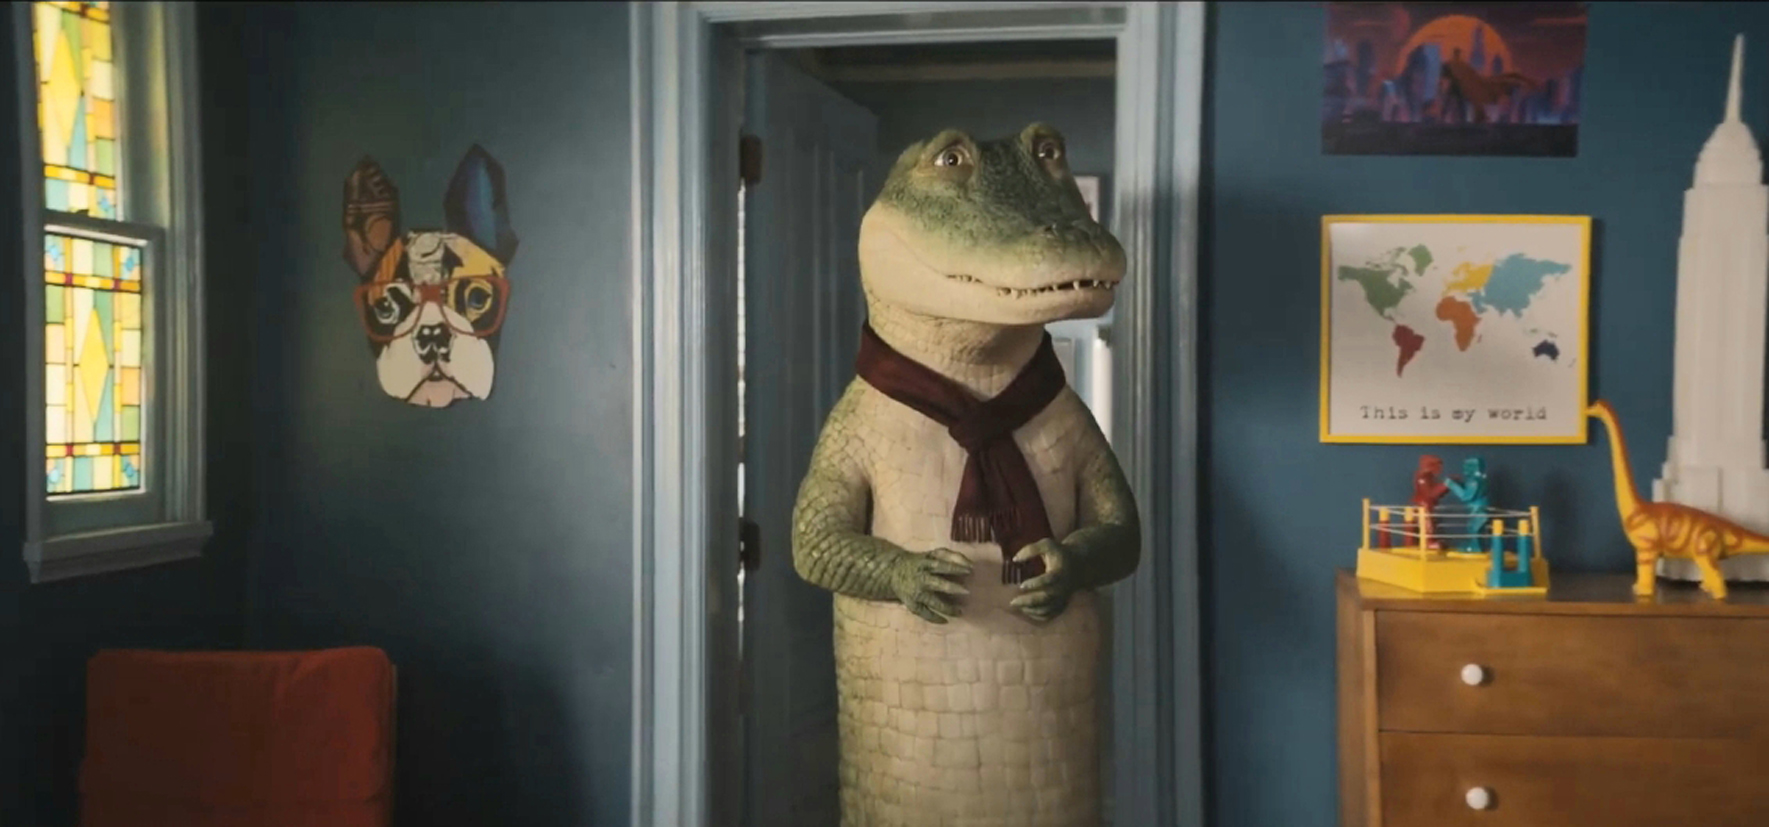 Lyle, chú cá sấu biết hát' - Phim hoạt hình đáng mong đợi